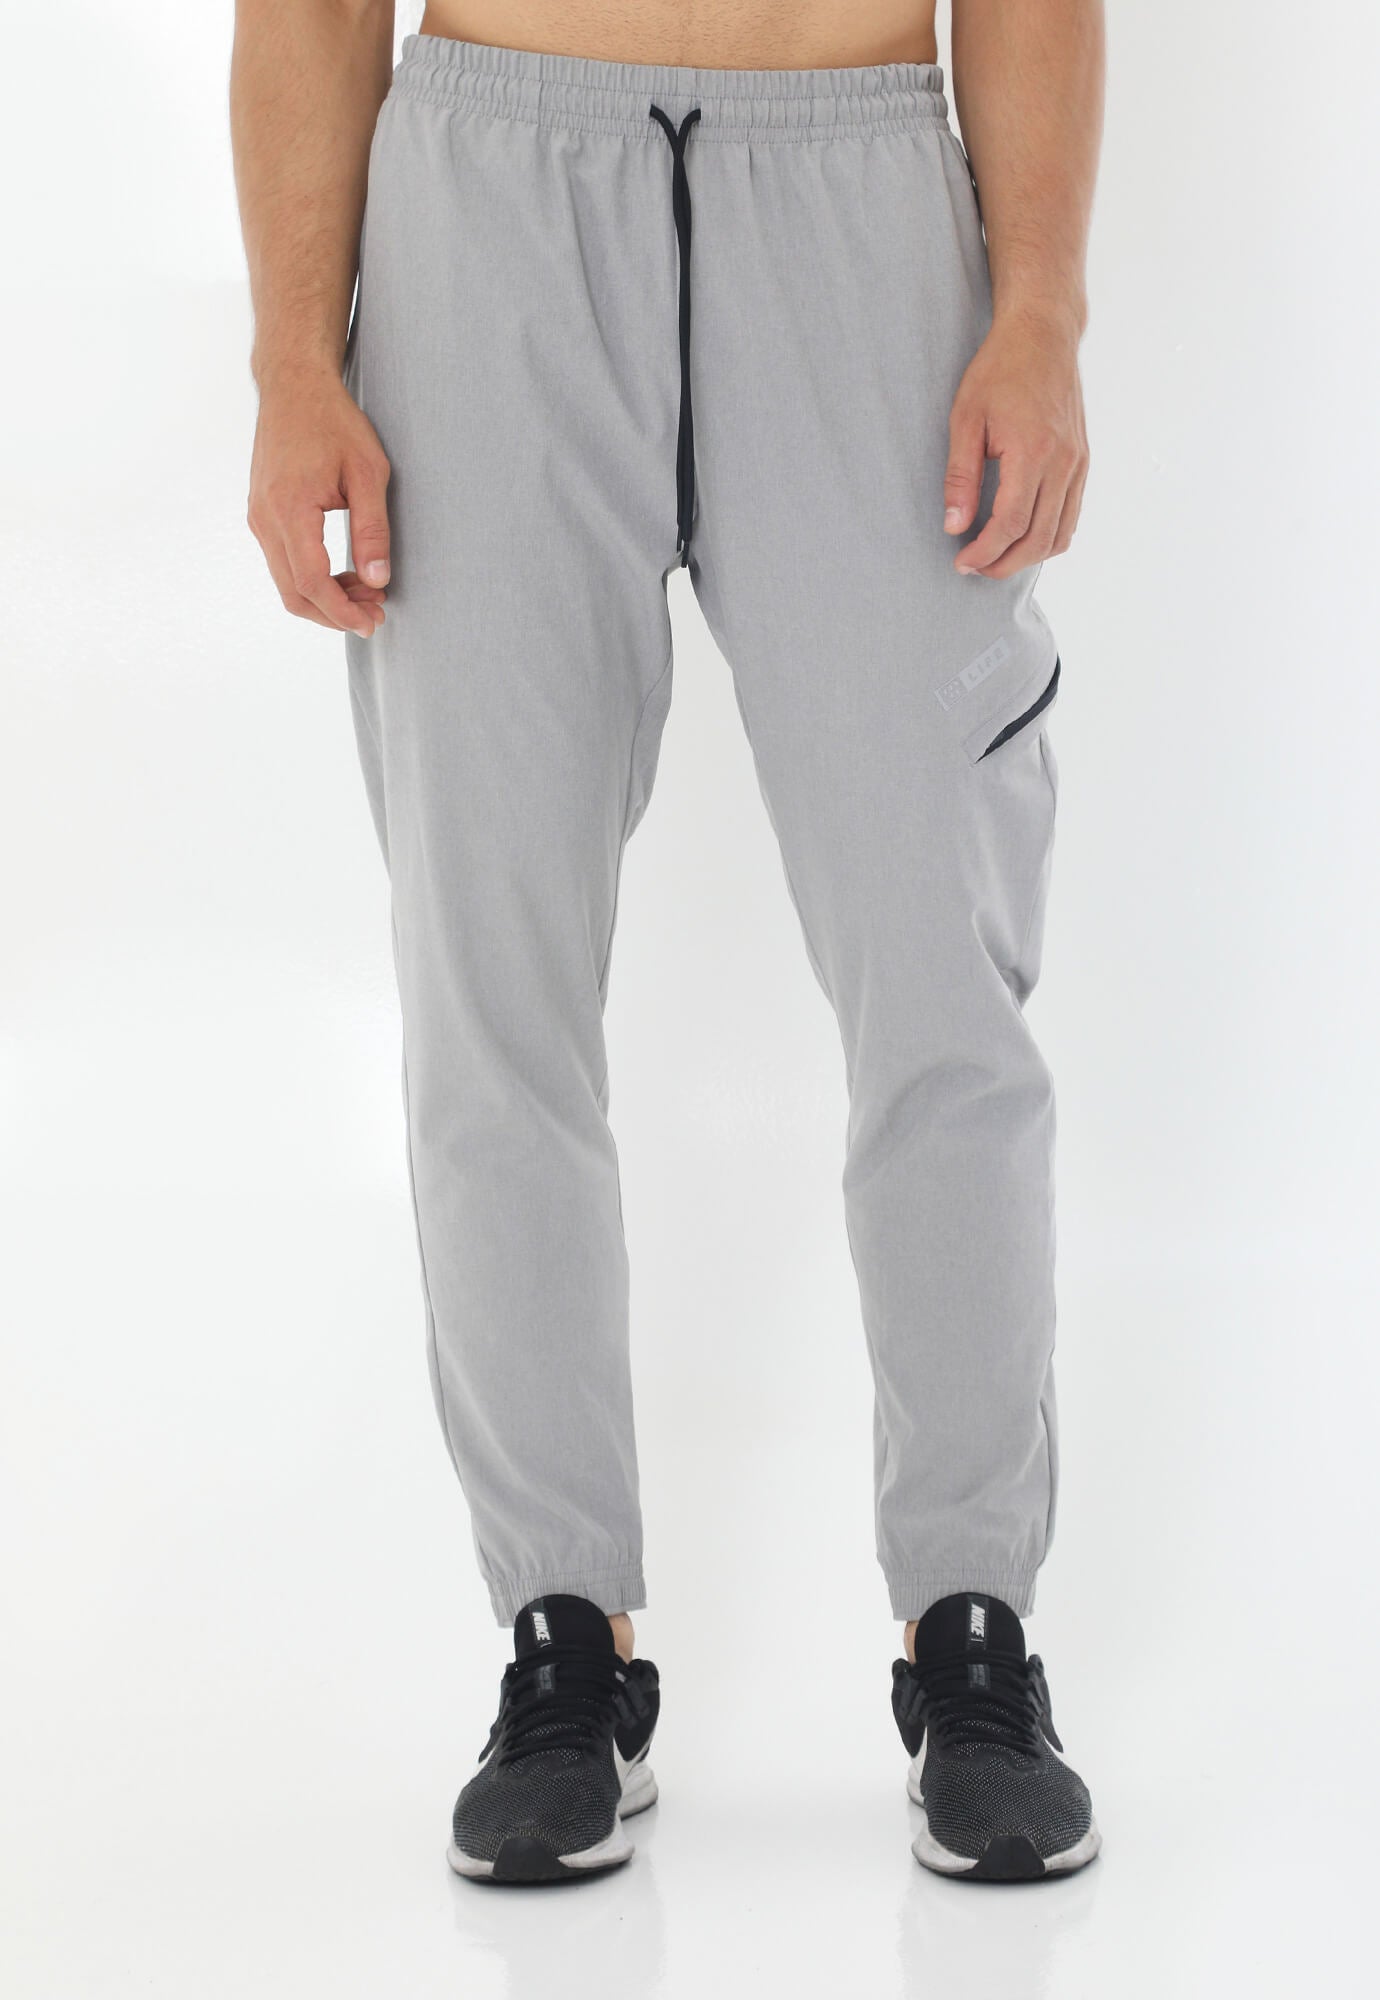 Pantalón deportivo gris tipo jogger con silueta ajustada con pretina y cordón ajustable para hombre